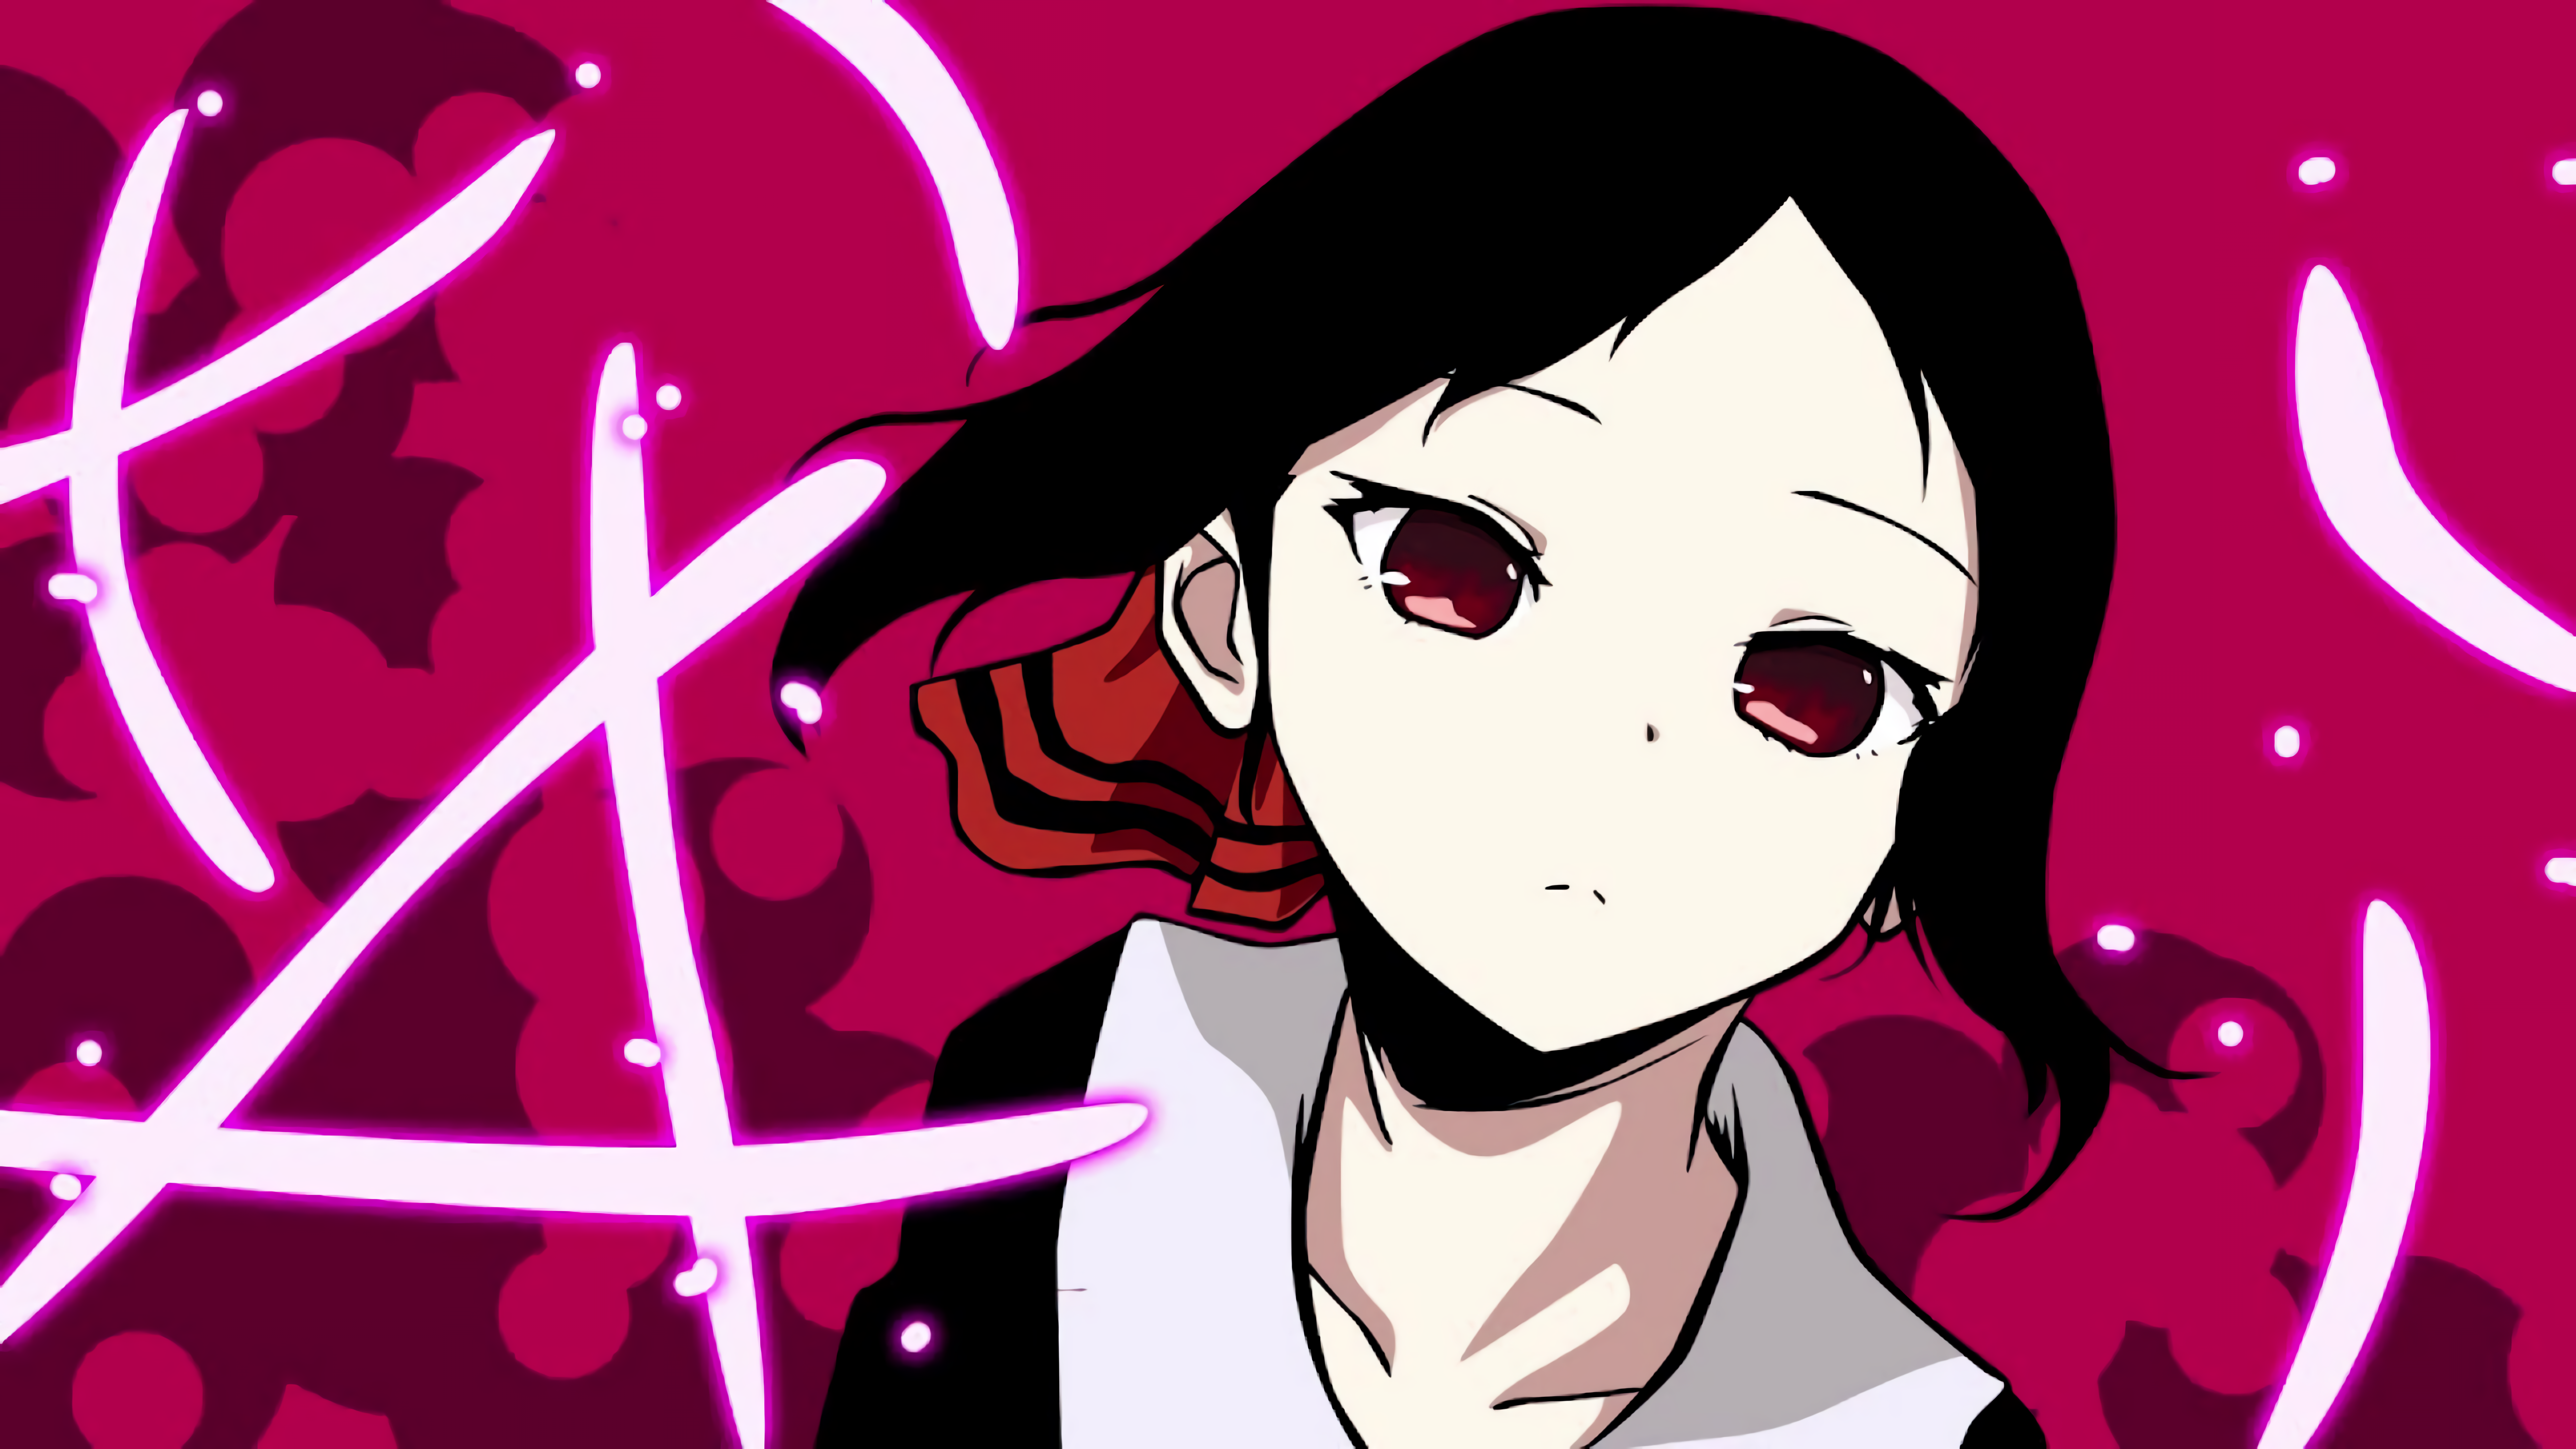 Anime Kaguya-sama: Love is War 4k Ultra HD Wallpaper by Shyrose